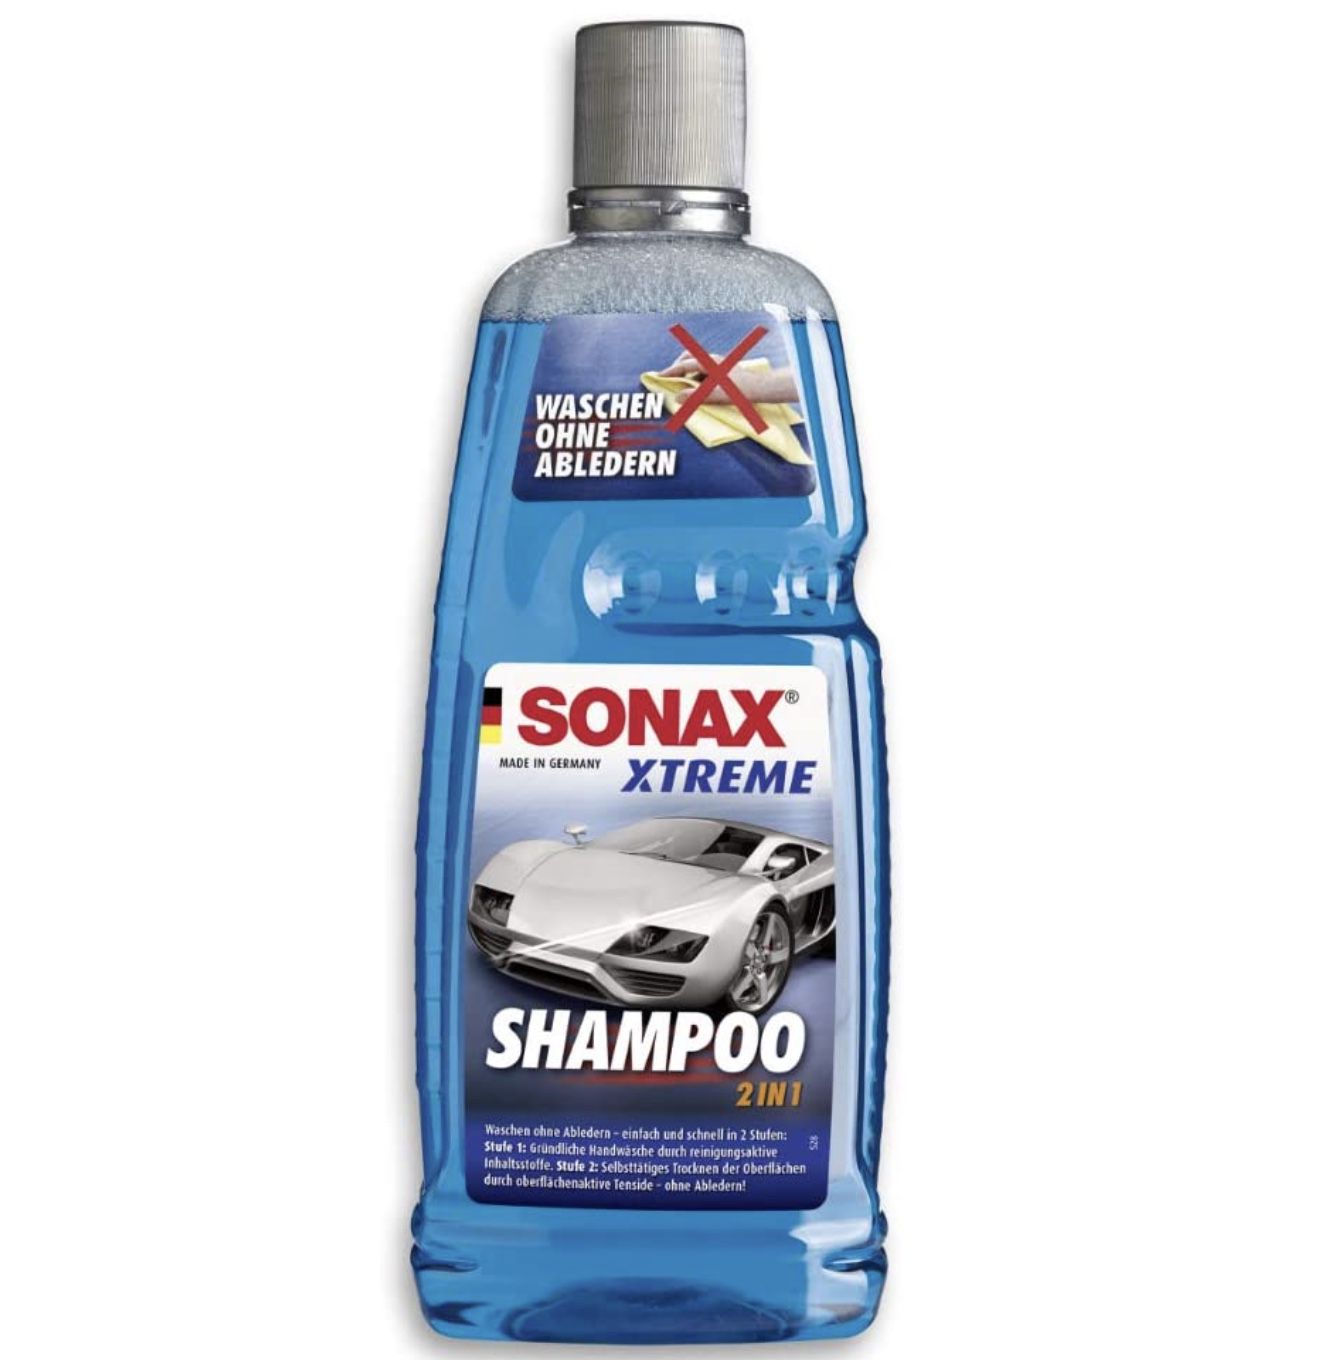 3x Sonax Xtreme Shampoo 2 in 1 Autoshampoo Konzentrat ohne Abledern für 11,34€ (statt 16€)   Prime